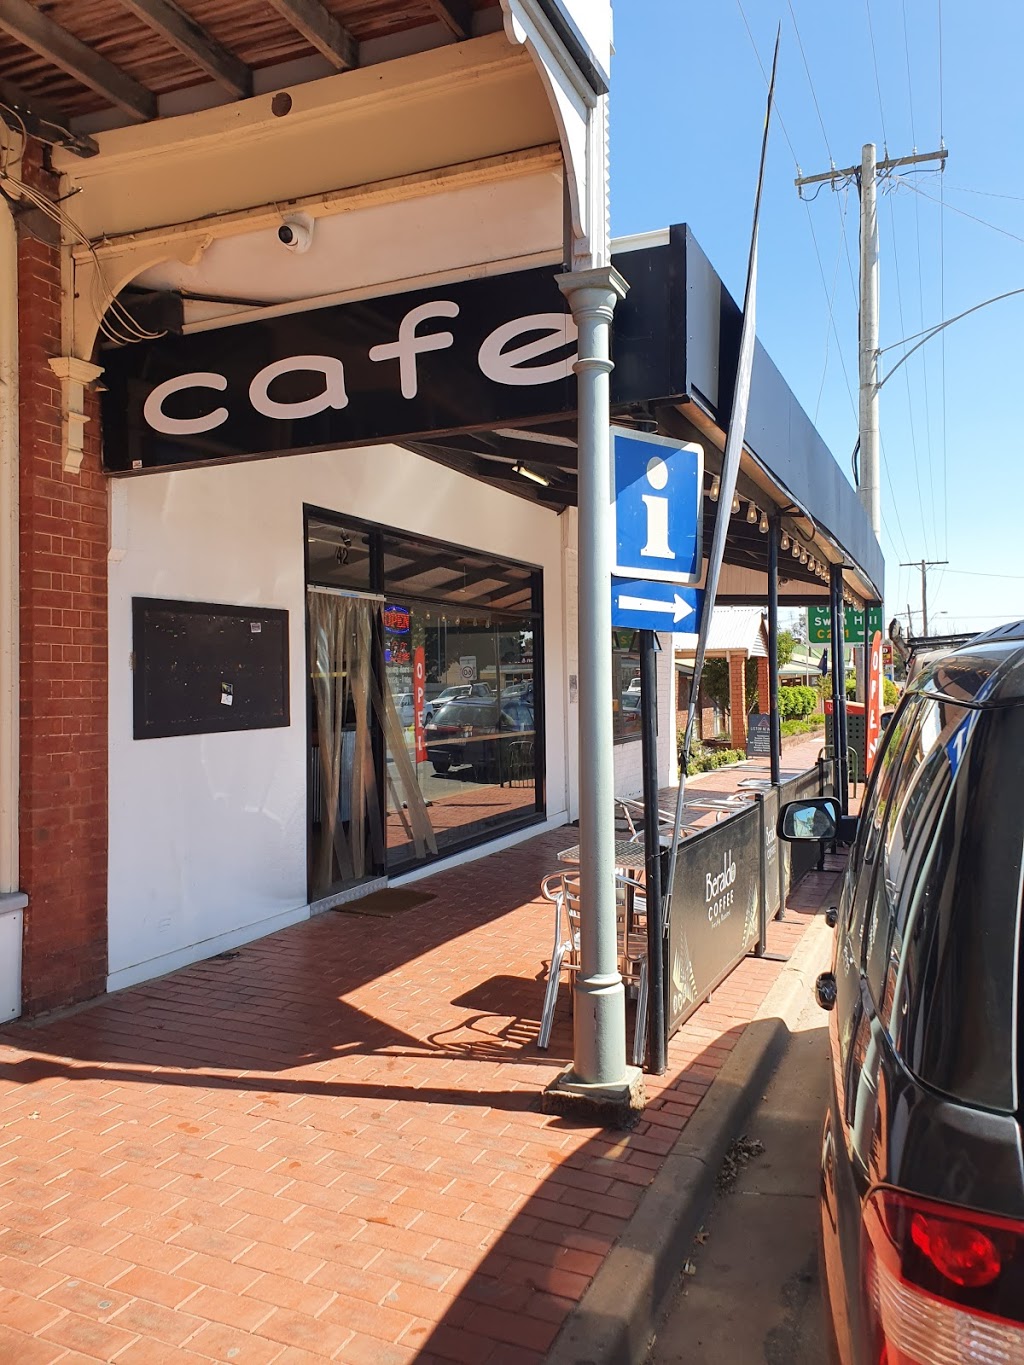 Spuds cafe | cafe | 42 Woods St, Donald VIC 3480, Australia